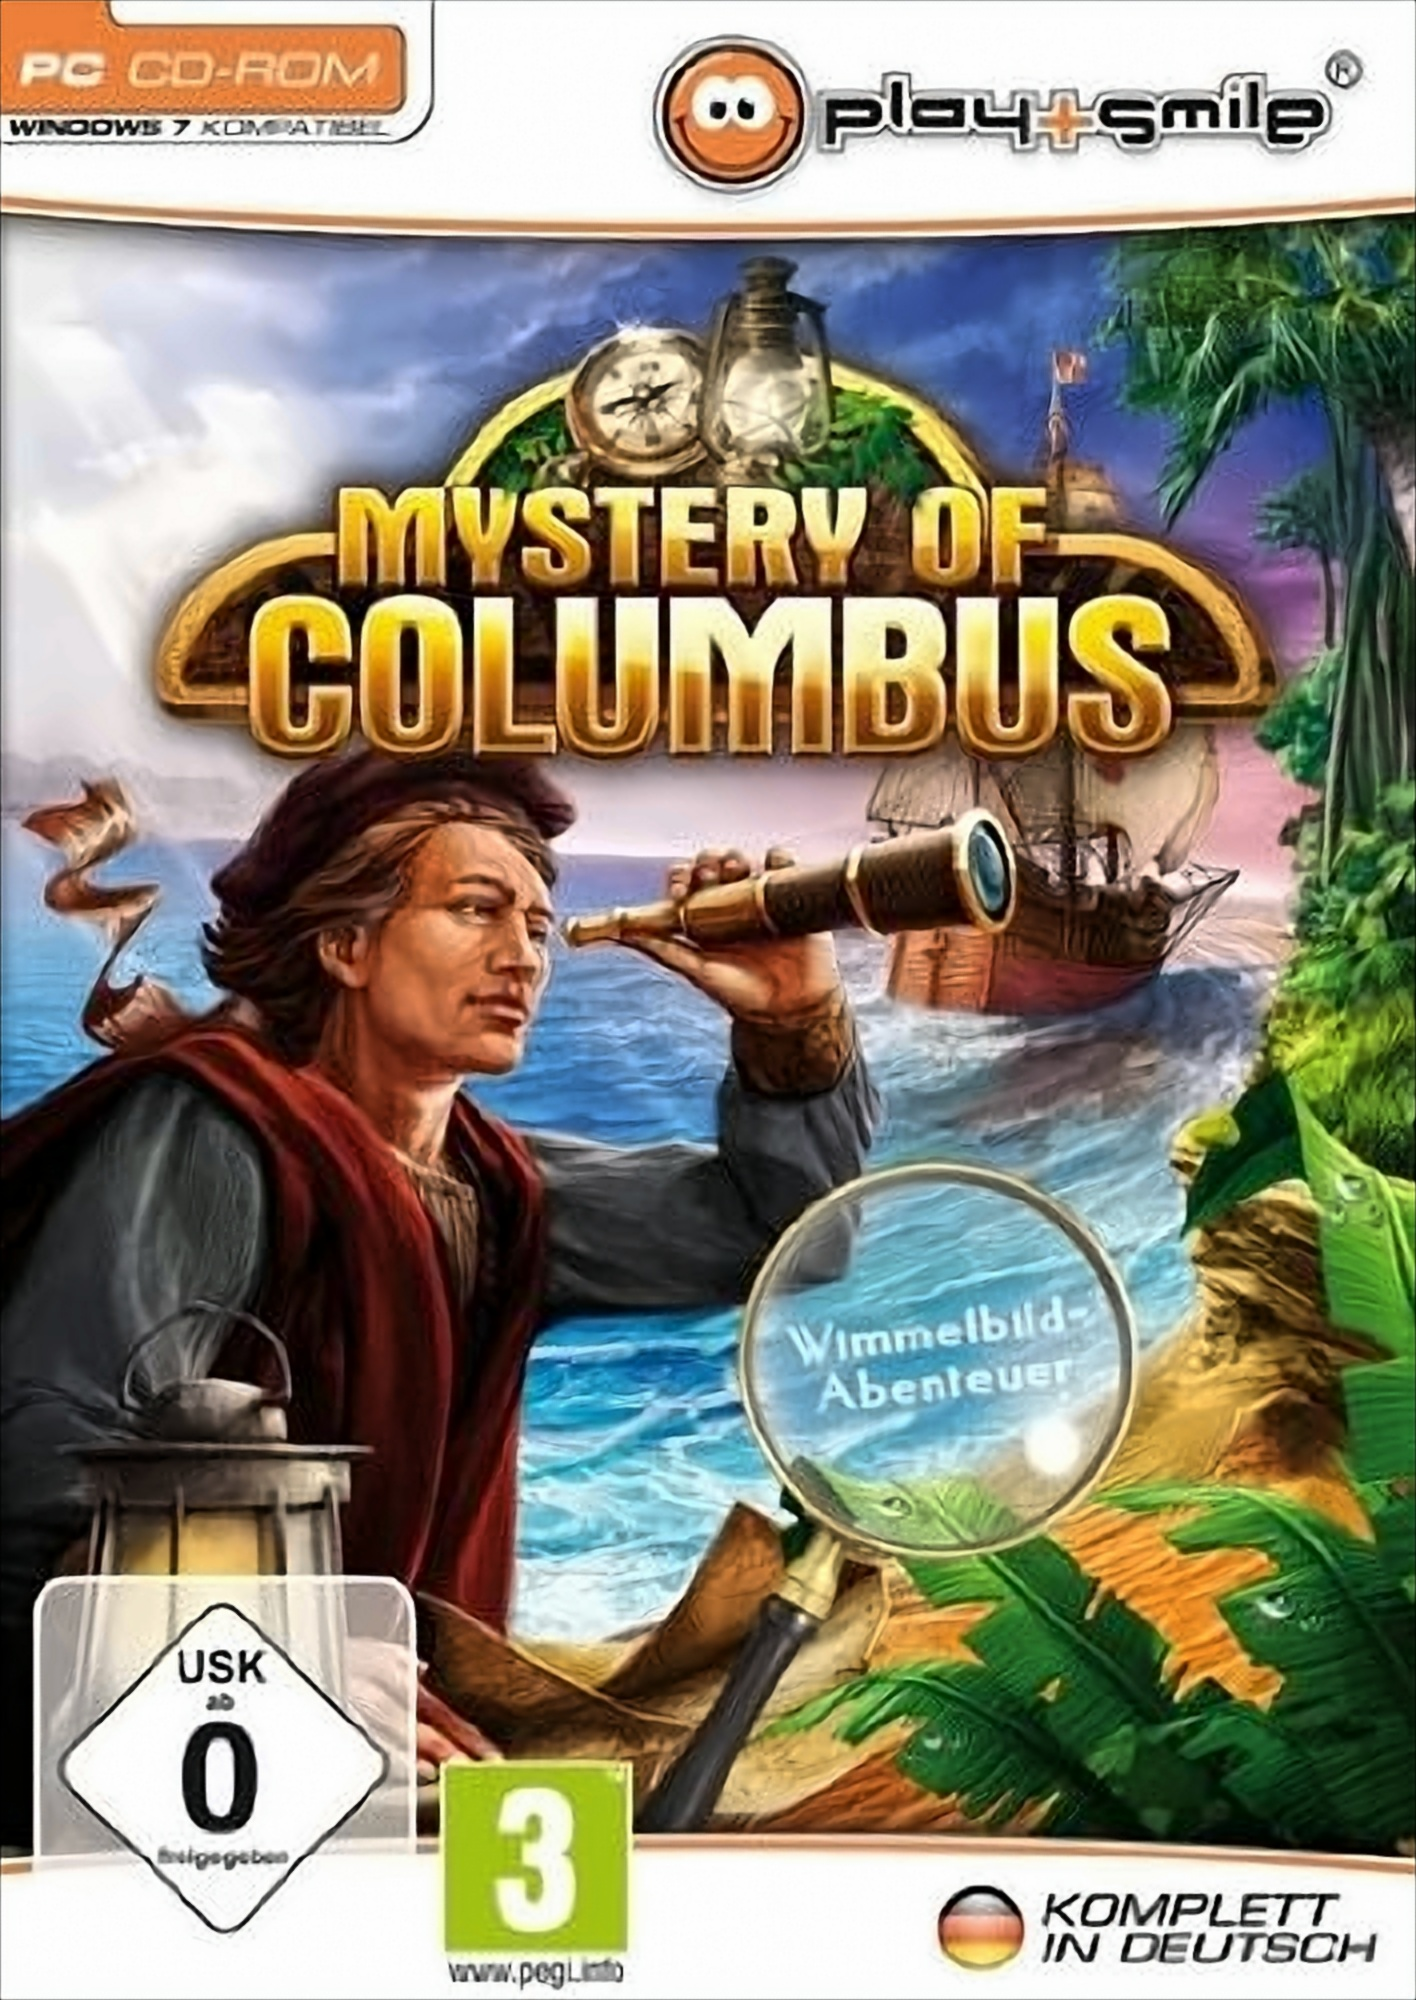 Ancient Spirits: Die Legende [PC] von - Columbus